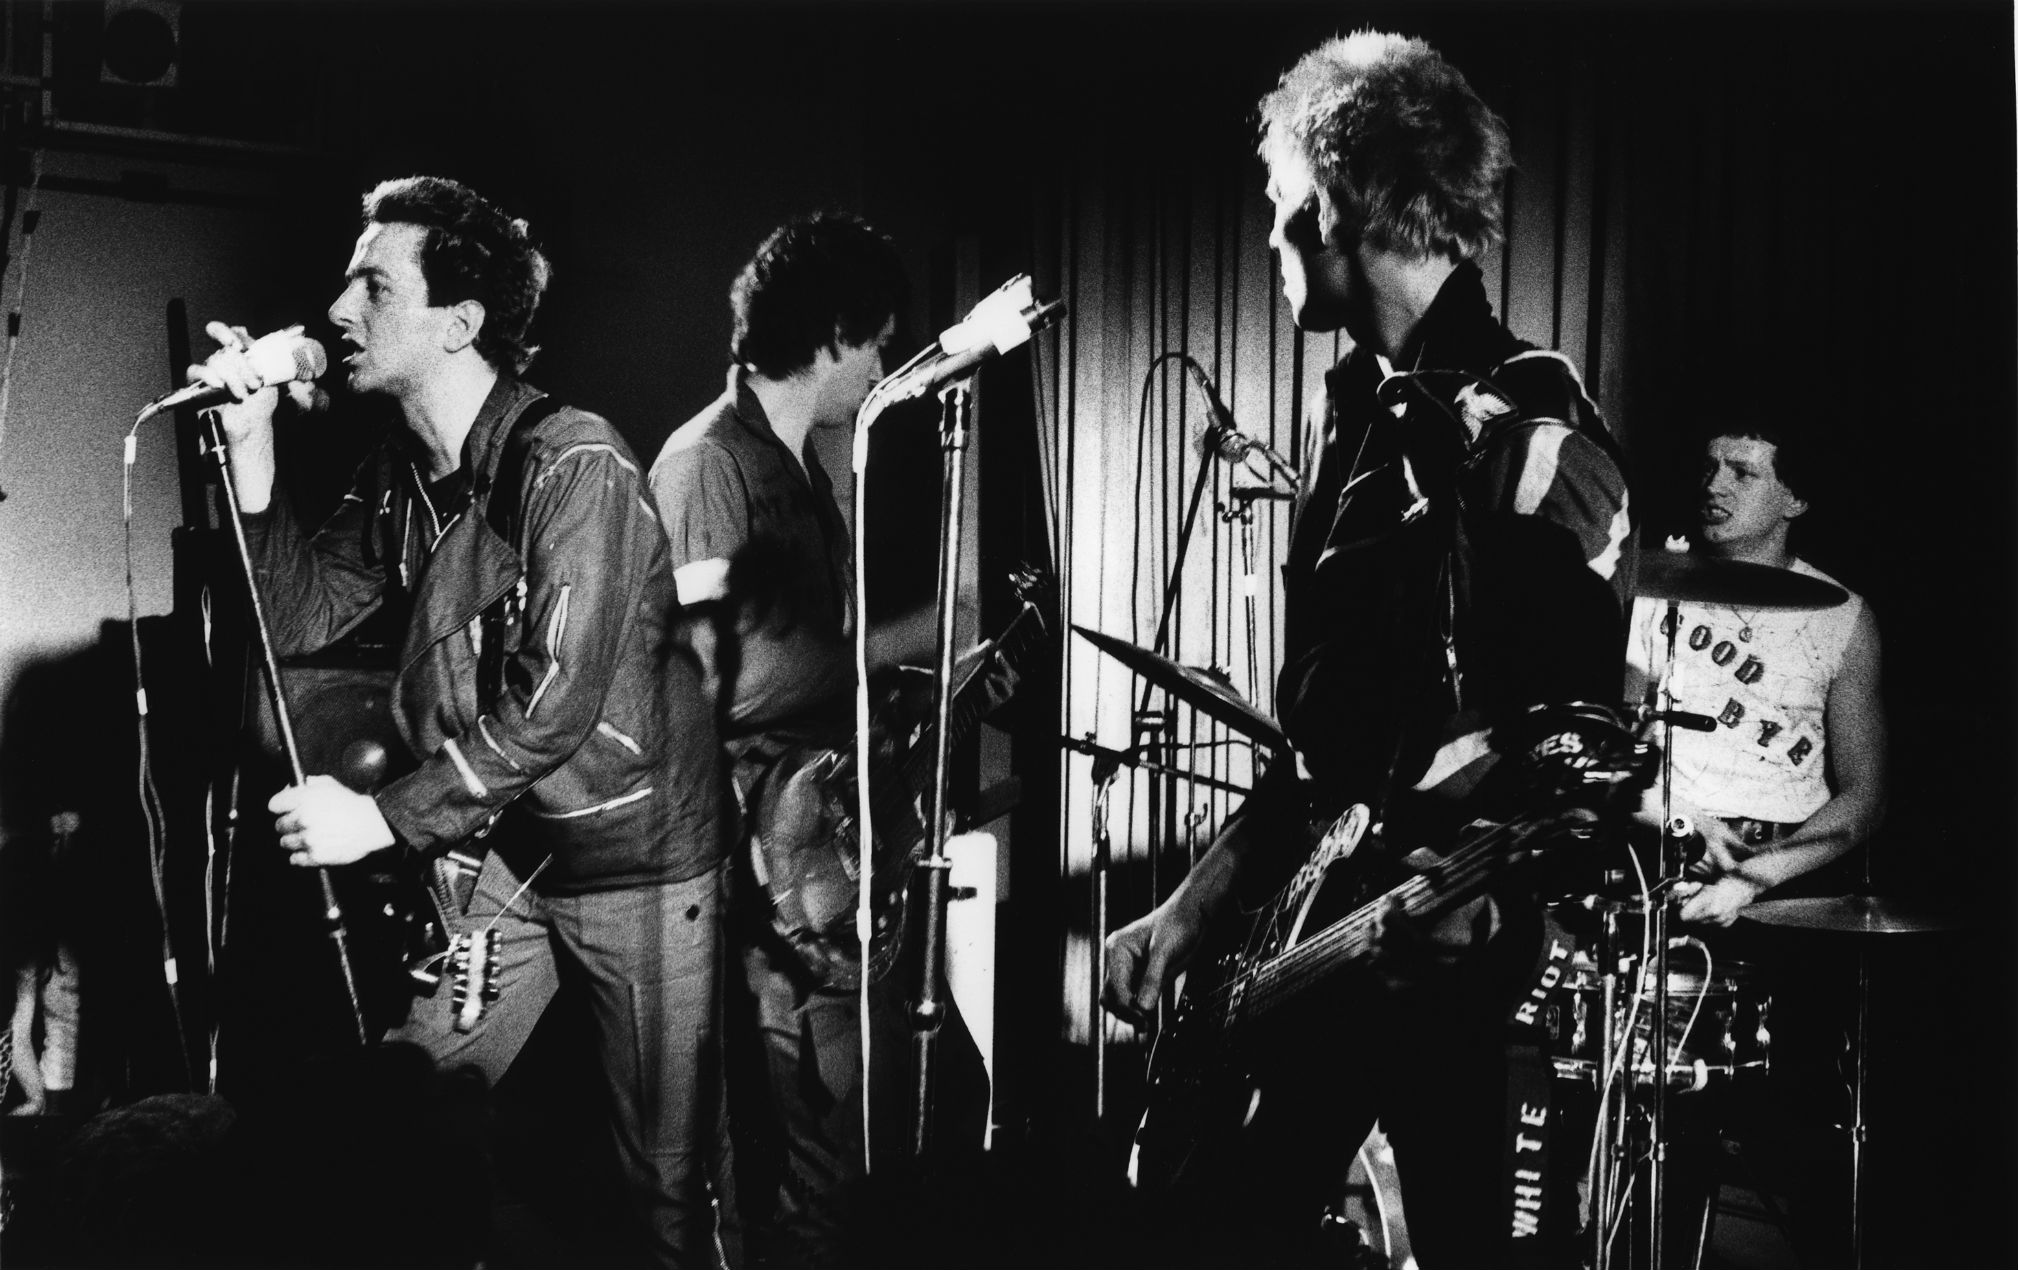 Una nueva exposición que conmemora el 40 aniversario de 'London Calling' de The Clash